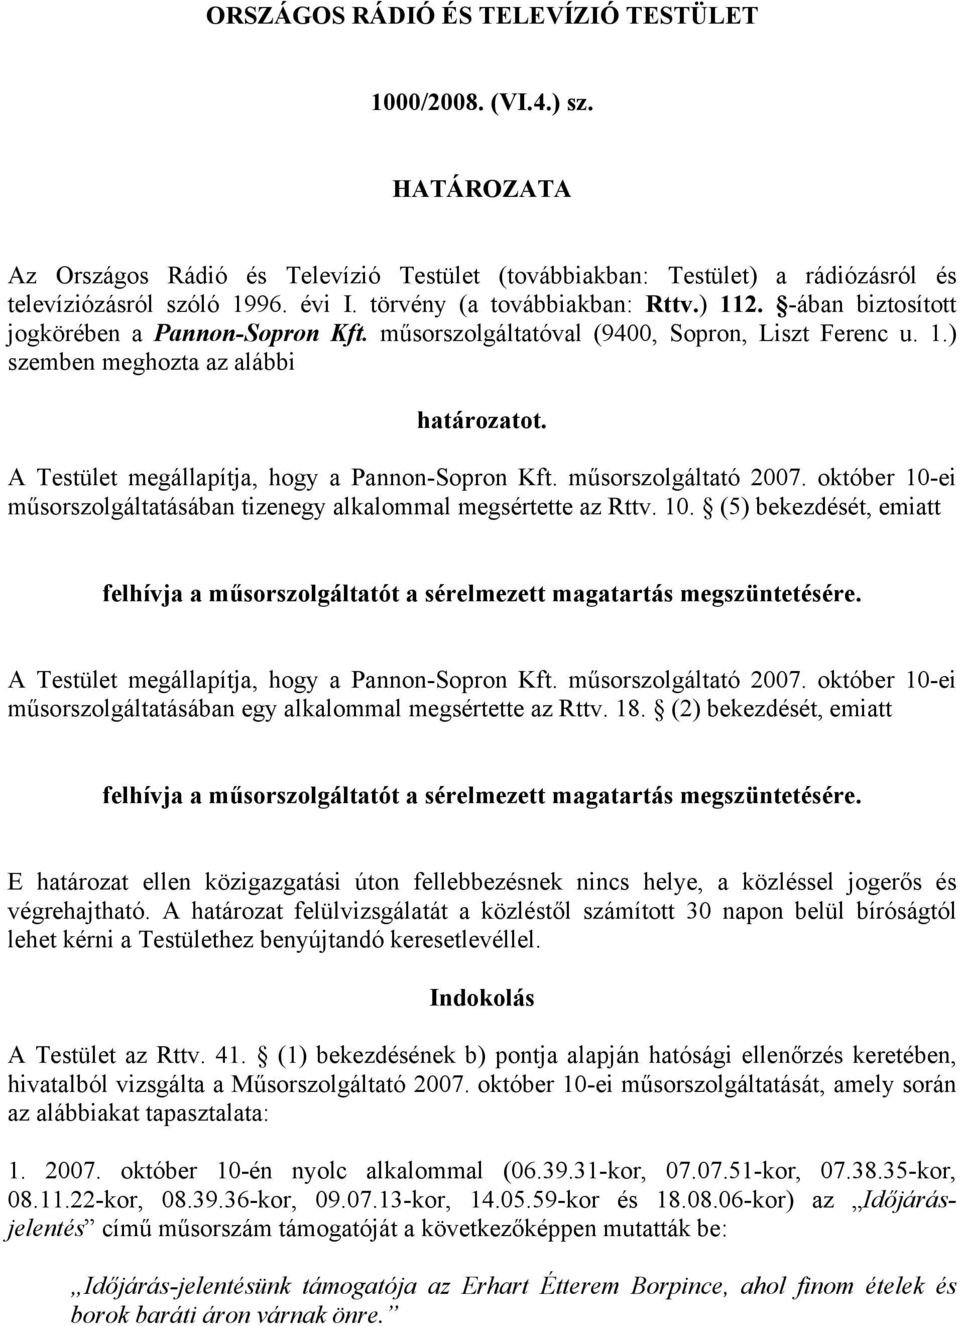 A Testület megállapítja, hogy a Pannon-Sopron Kft. műsorszolgáltató 2007. október 10-ei műsorszolgáltatásában tizenegy alkalommal megsértette az Rttv. 10. (5) bekezdését, emiatt felhívja a műsorszolgáltatót a sérelmezett magatartás megszüntetésére.